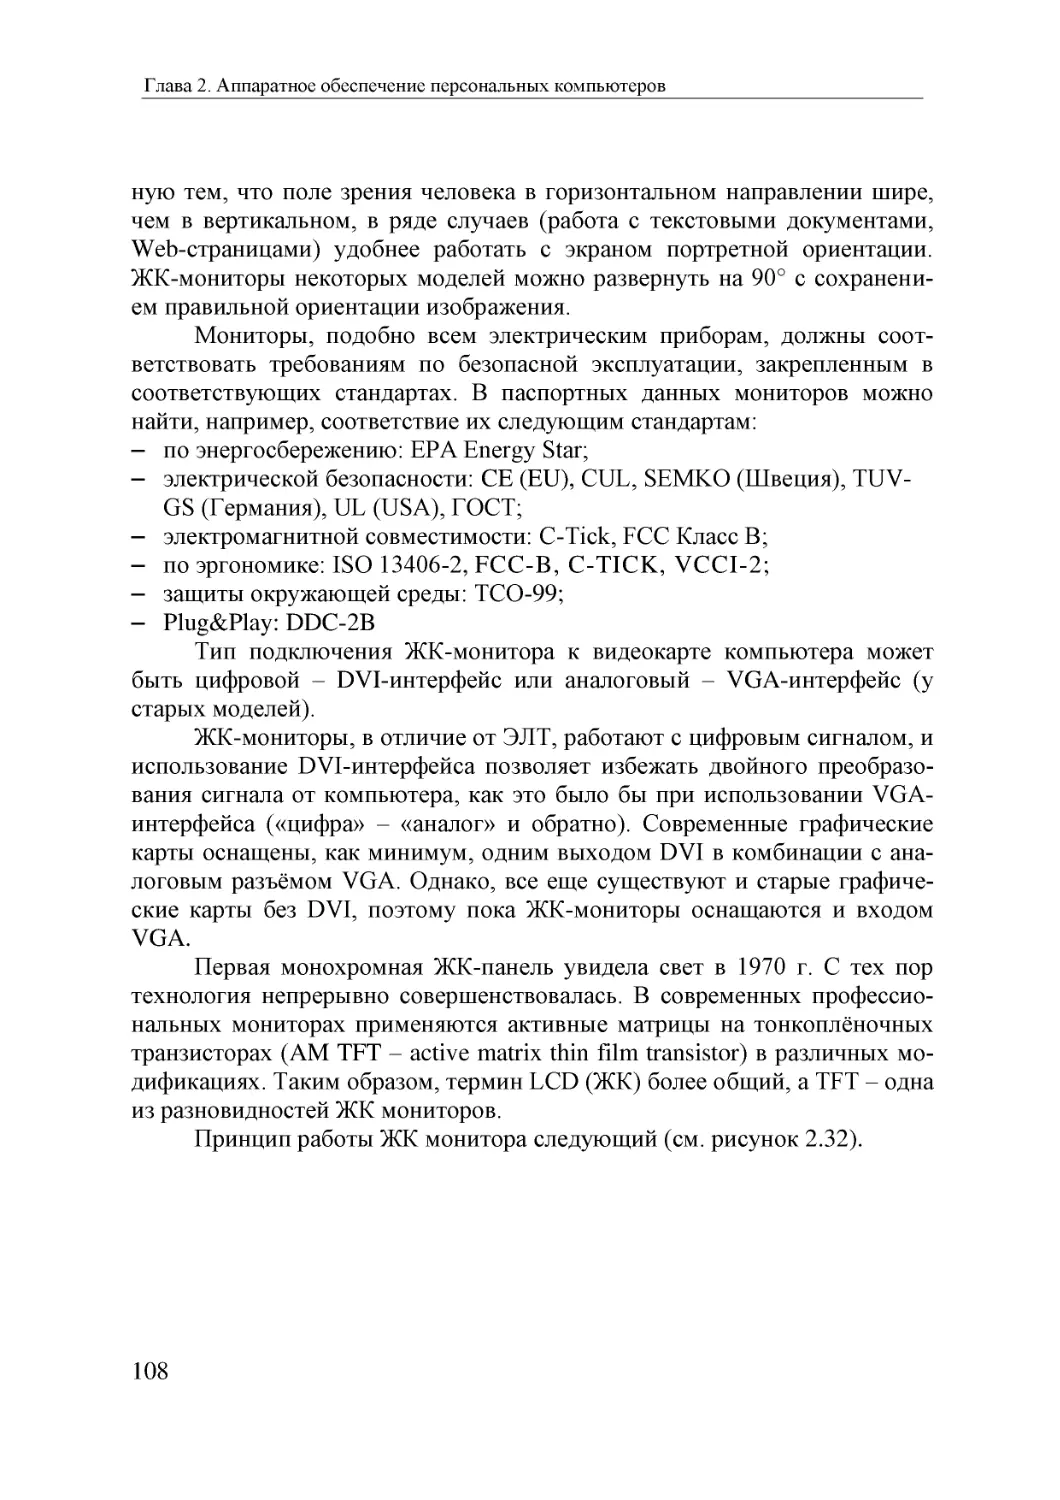 Informatika_Uchebnik_dlya_vuzov_2010 108